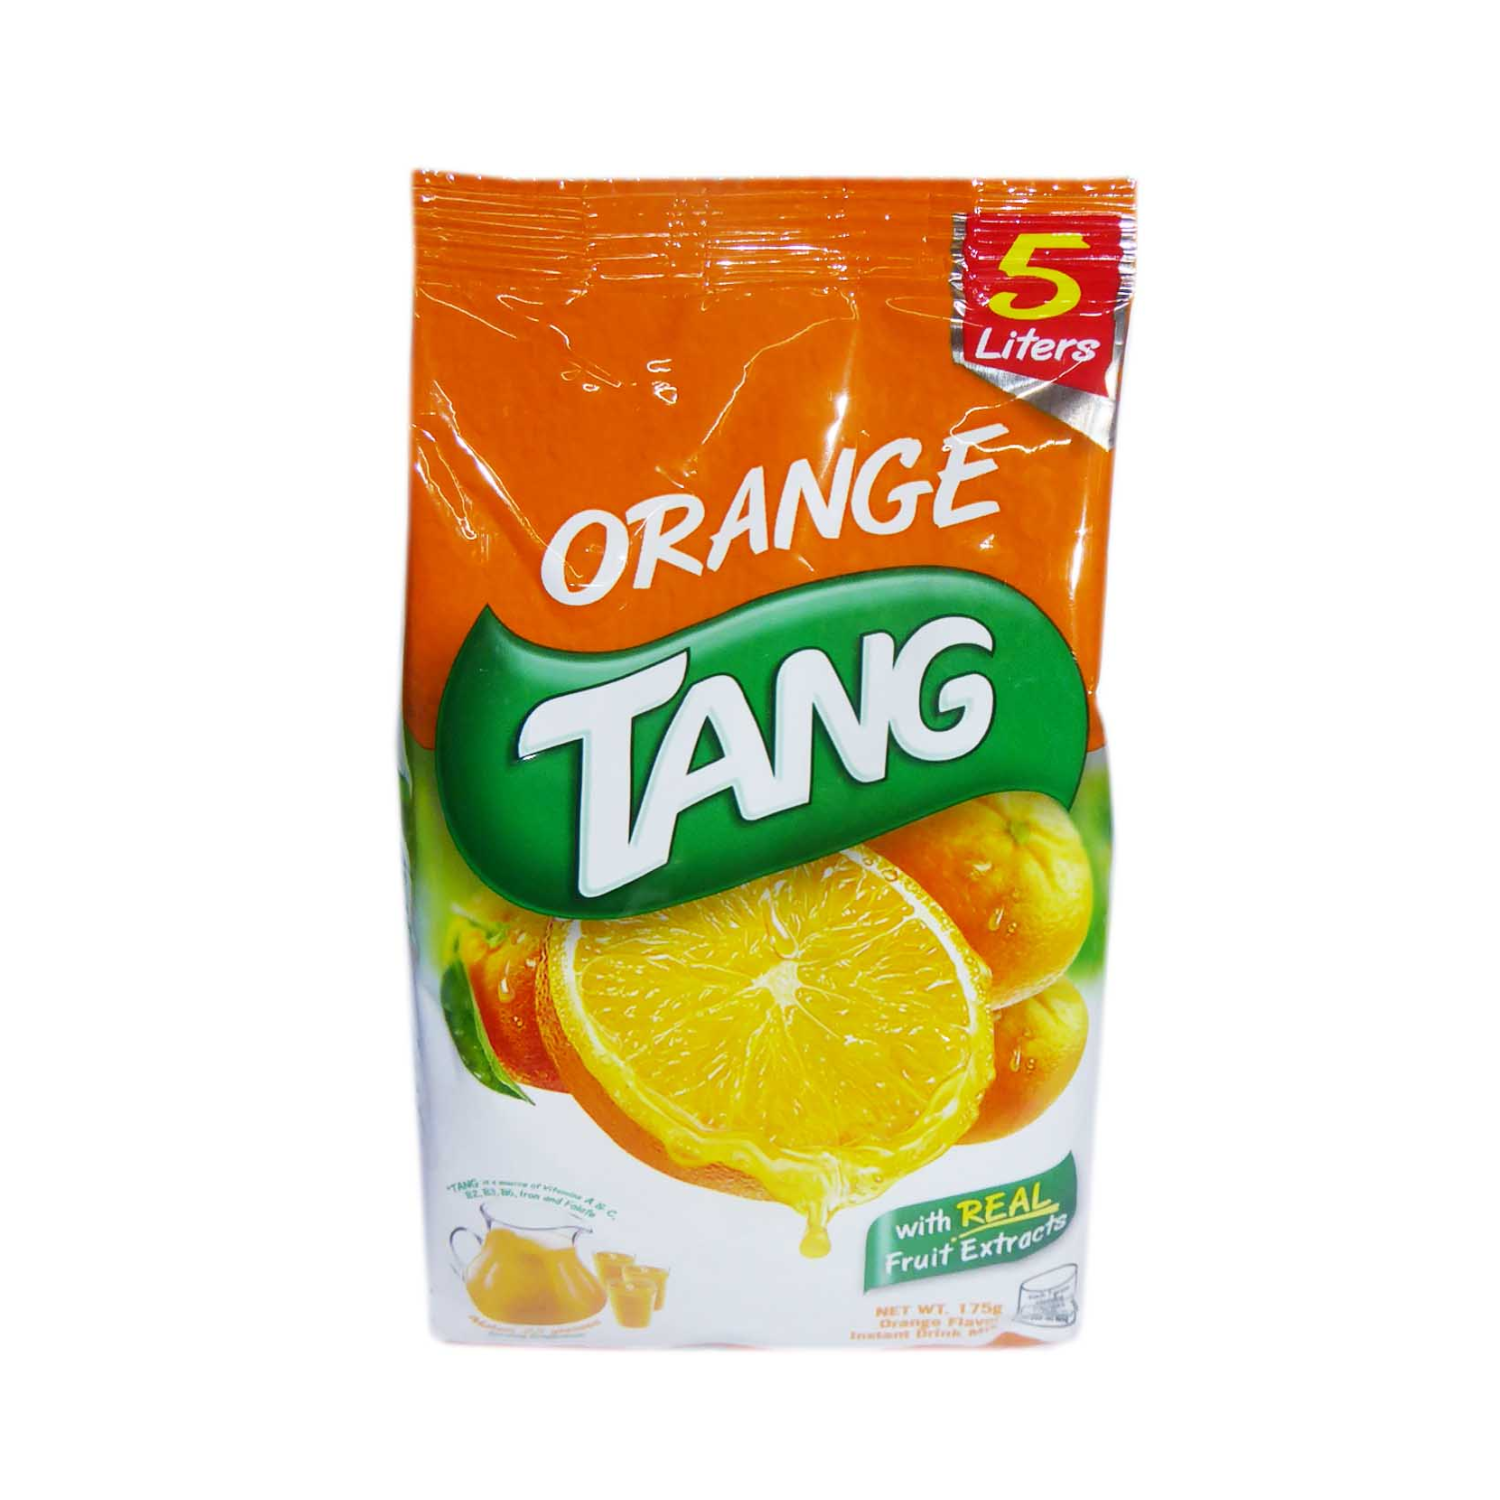 Tang Instant drankpoeder sinaasappel smaak